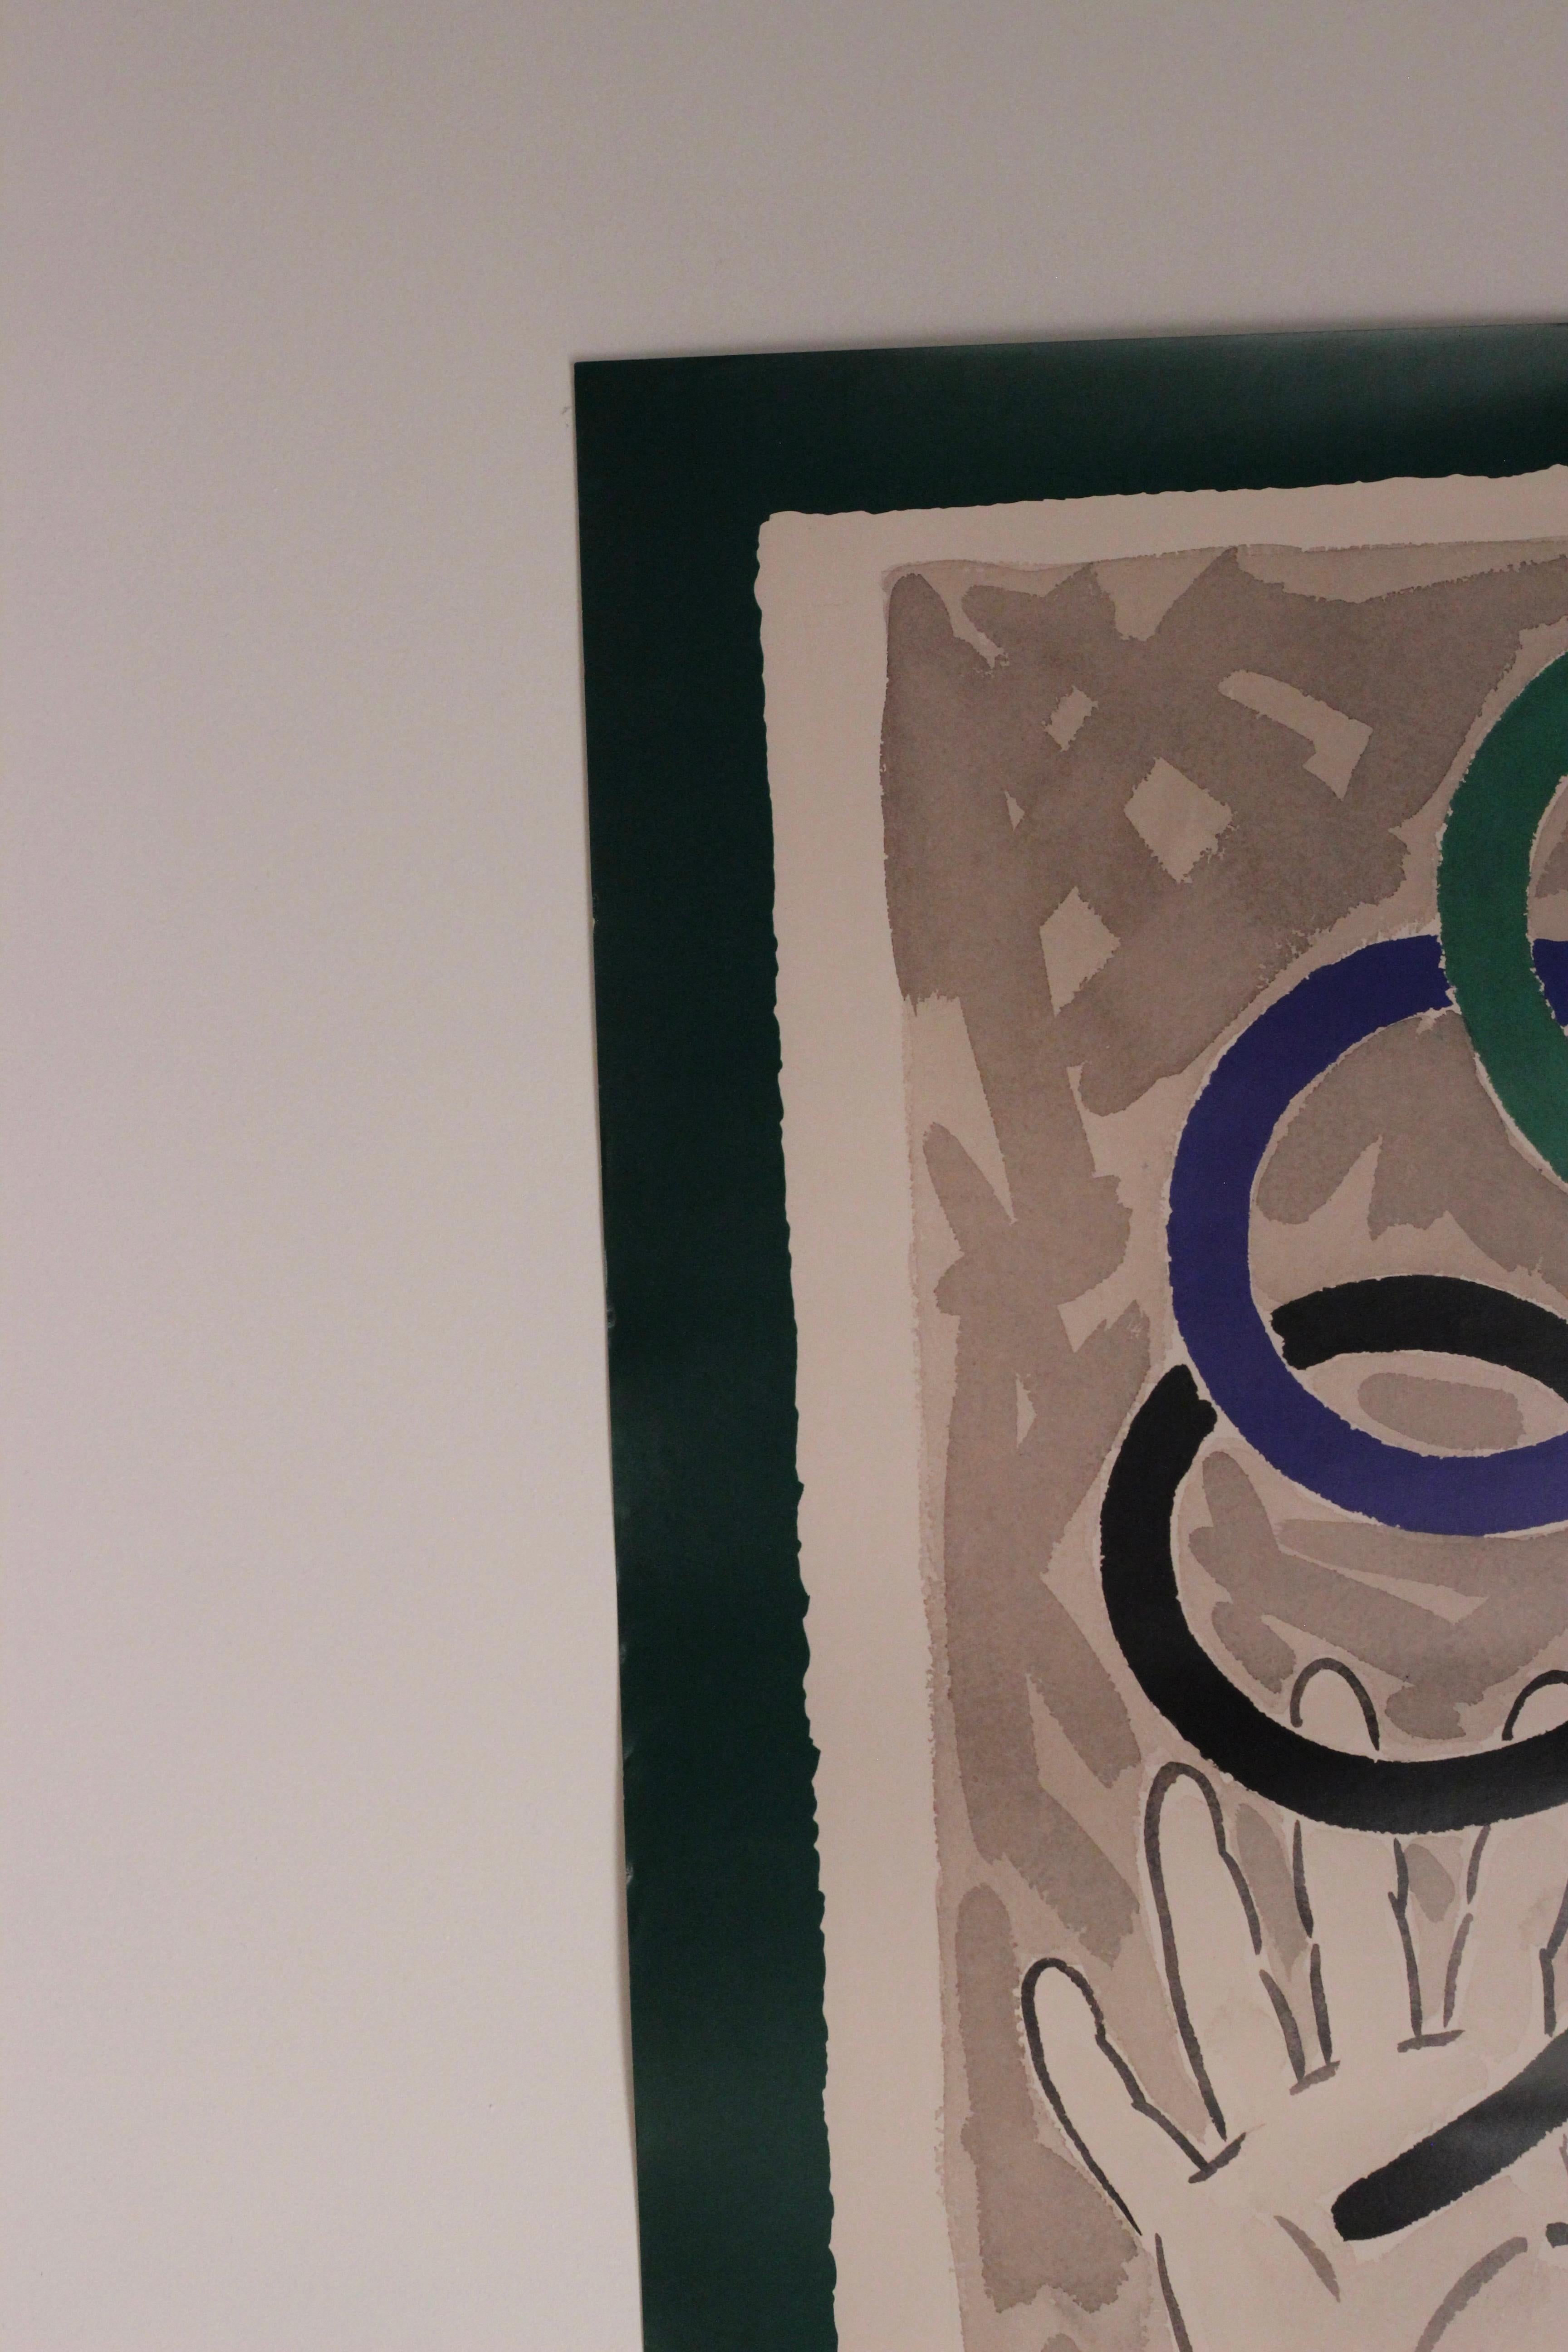 Original-Olympia-Plakat von Barcelona für die XXV. Olympischen Spiele des Künstlers Robert Llimós.

Robert Llimós wurde am 19. Oktober 1943 in Barcelona geboren. 
Seine künstlerische Ausbildung absolvierte er an der Massana School of Art und an